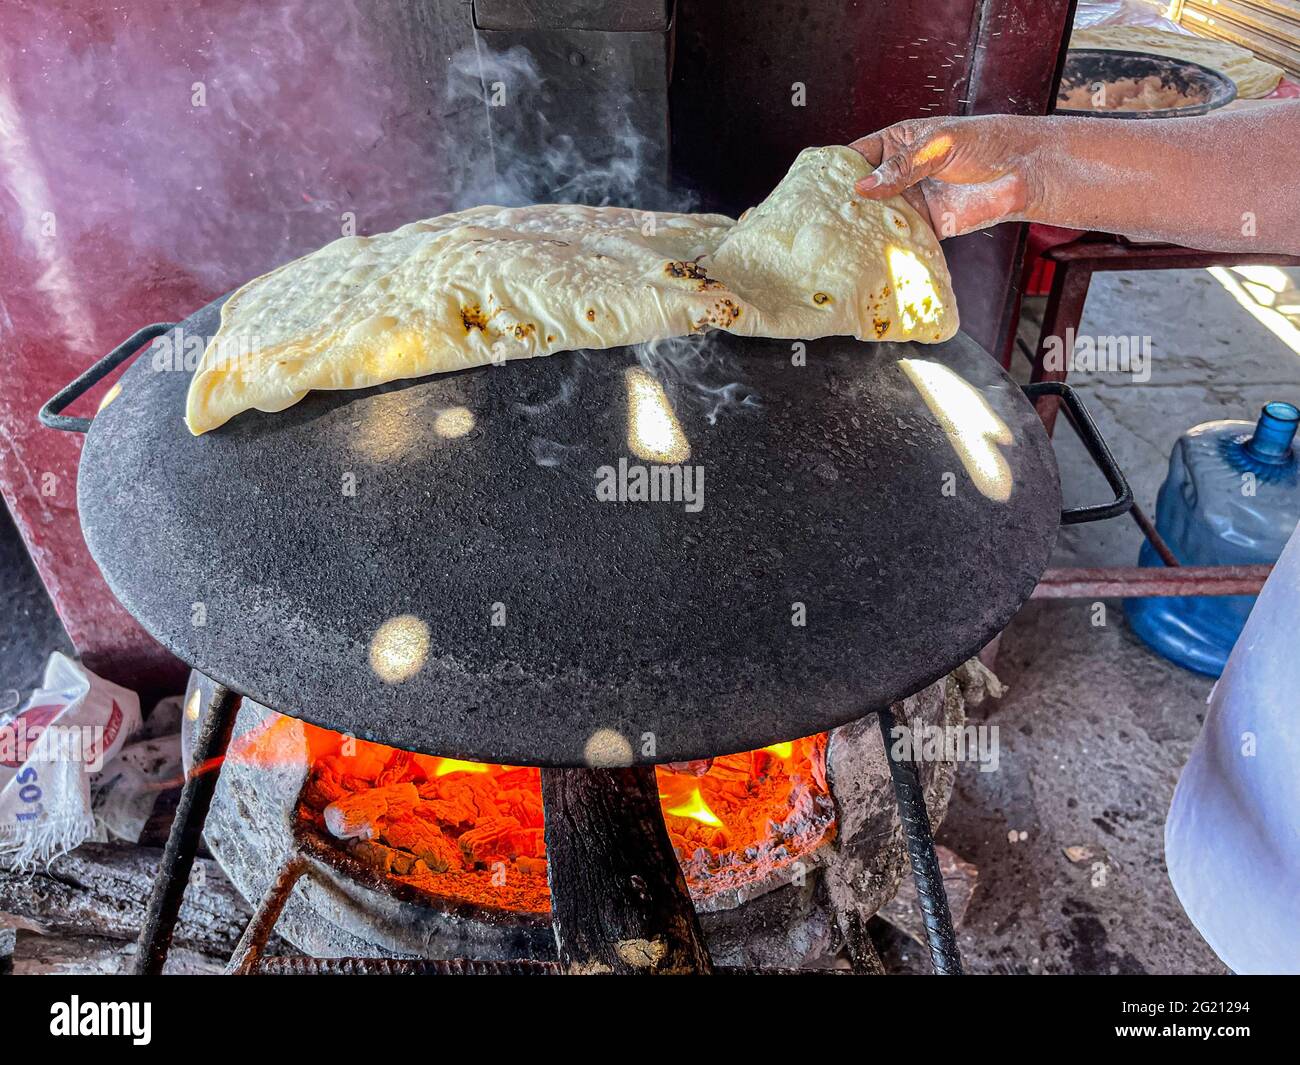 https://c8.alamy.com/comp/2G21294/flour-tortillas-cooked-on-a-steel-comal-with-the-fire-of-the-mesquite-wood-embers-at-the-burros-de-carne-asada-stalls-in-the-tiaguis-del-hectro-espino-sonoran-food-on-the-embers-food-food-meals-food-photo-by-luis-gutierrez-norte-photo-tortillas-de-harina-cocida-en-comal-de-acero-con-el-fuego-de-las-brasas-de-lea-de-mezquite-en-los-puestos-de-burros-de-carne-asada-en-el-tiaguis-del-hectro-espino-comida-sonorense-en-las-brasas-alimentos-comida-comidas-food-photo-by-luis-gutierrez-norte-photo-2G21294.jpg